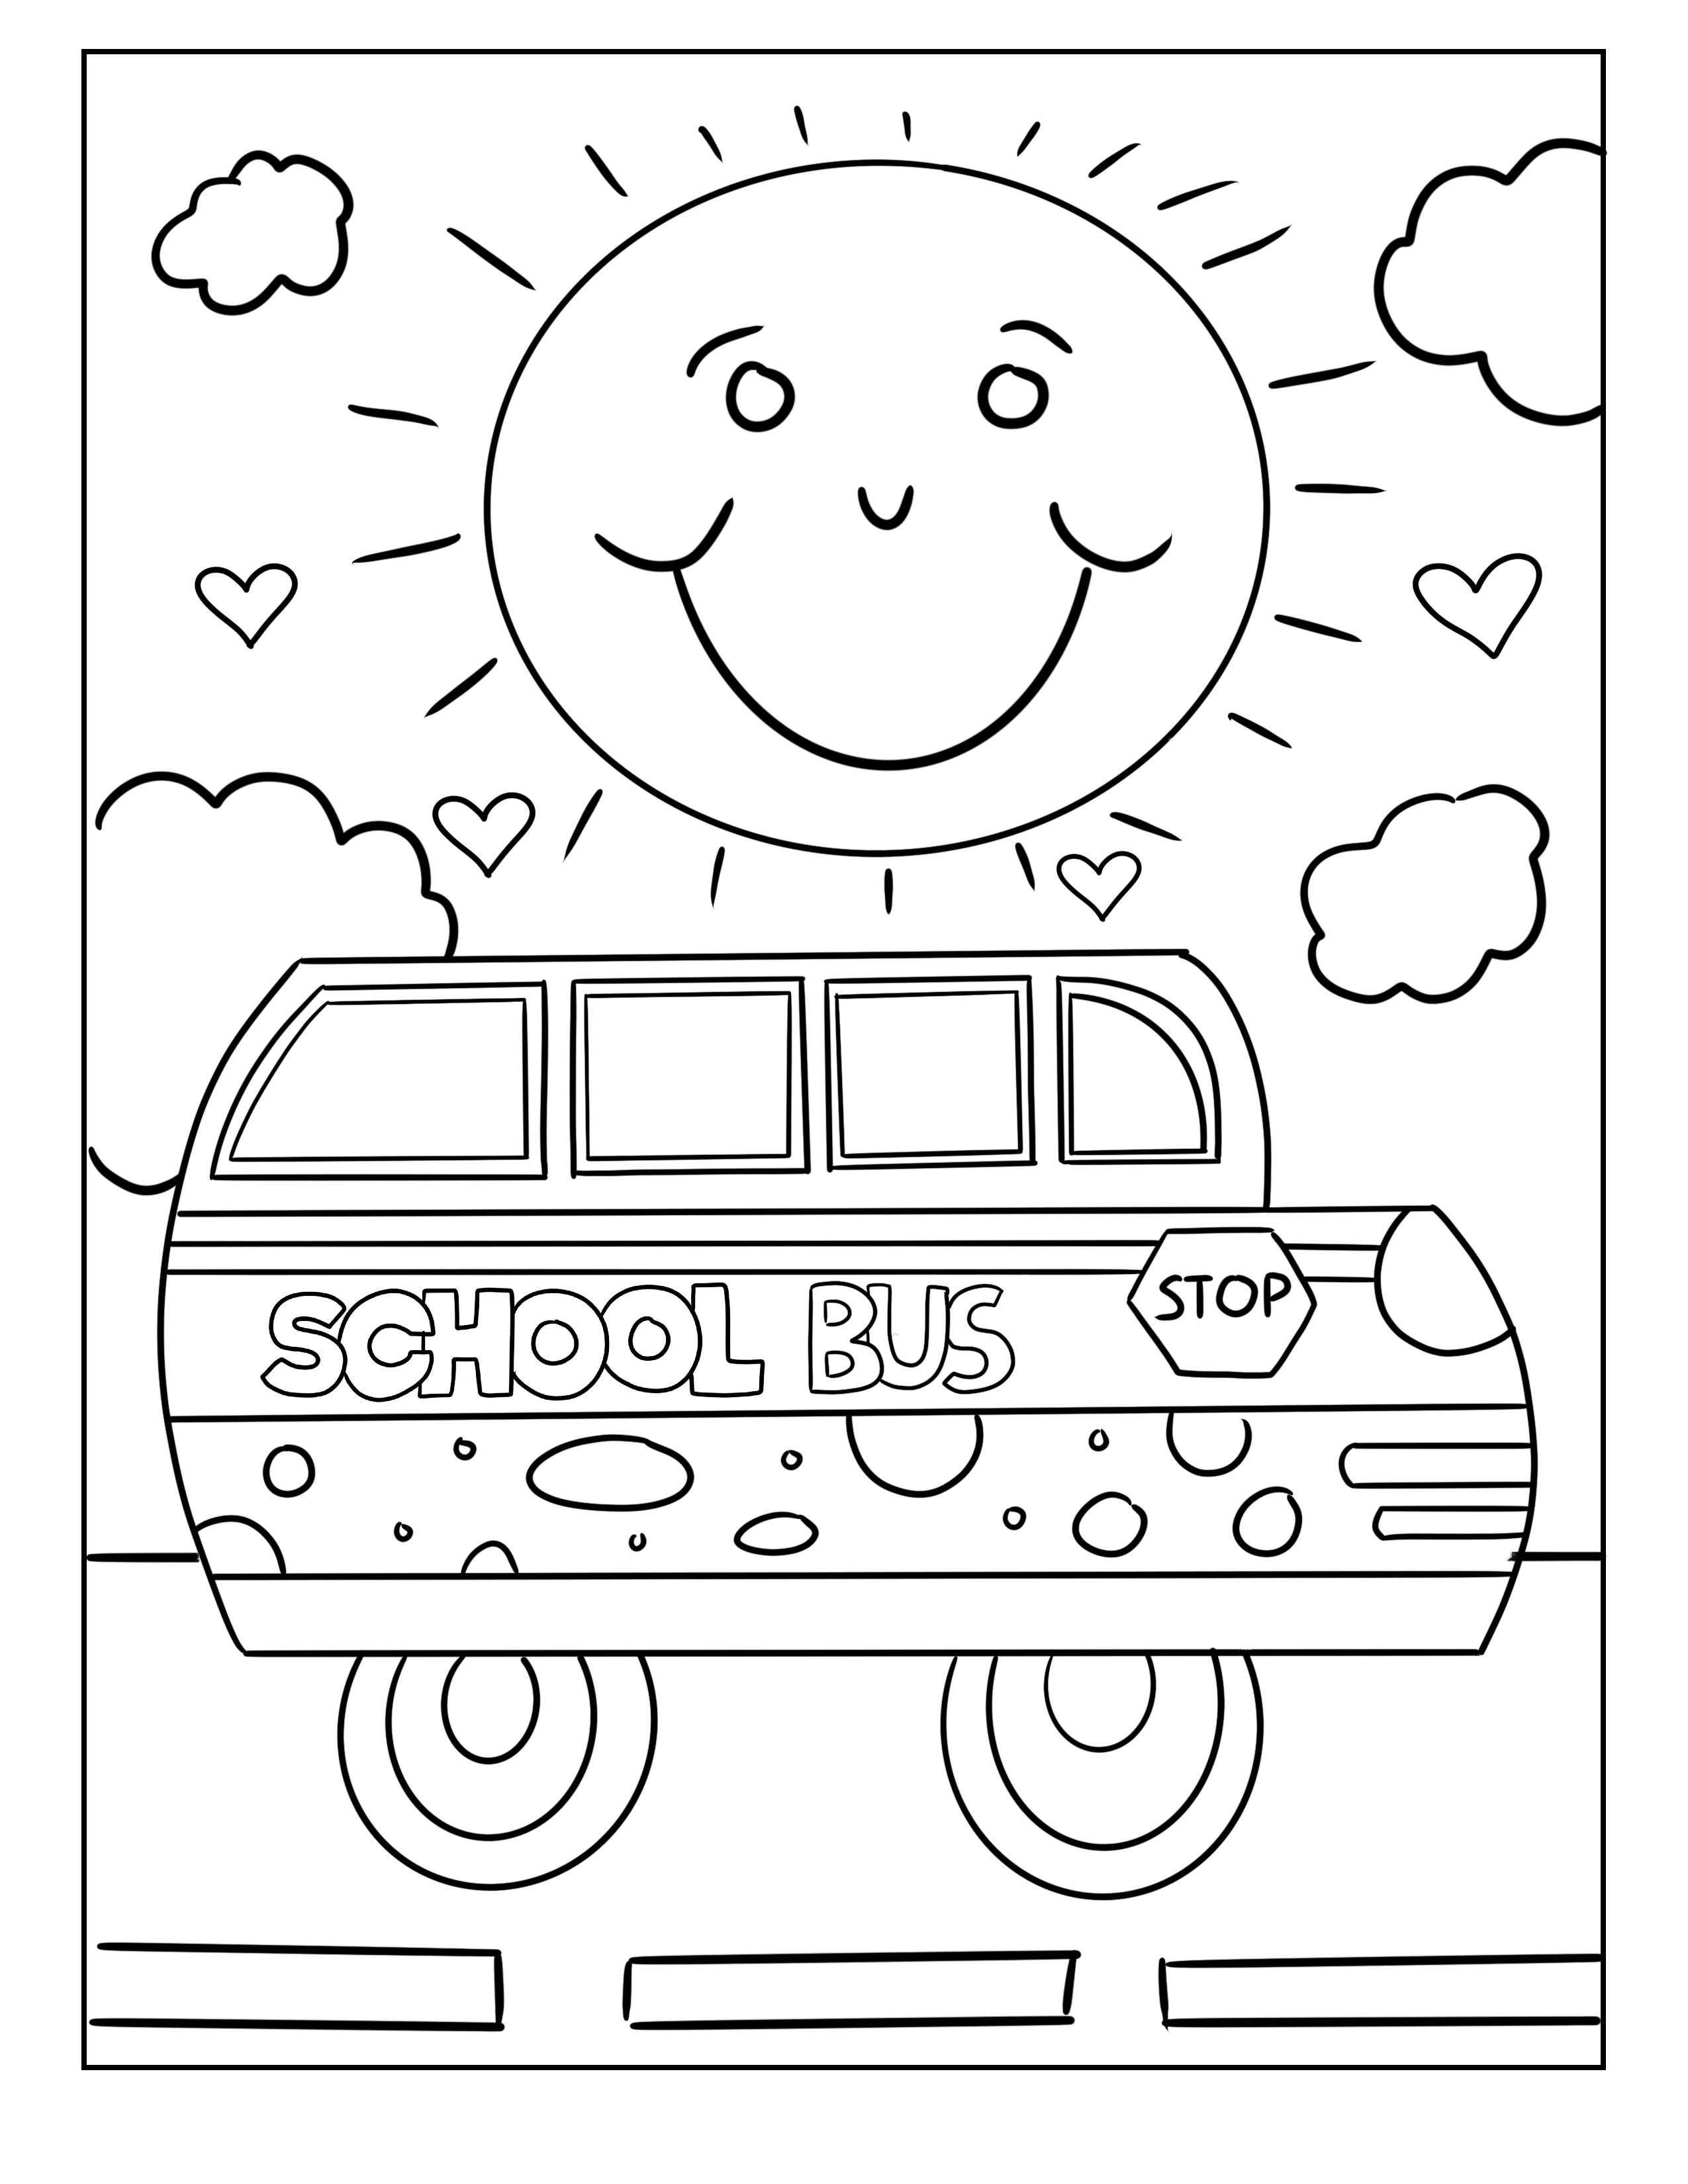 Tranh tô màu xe buýt trở bé đến trường